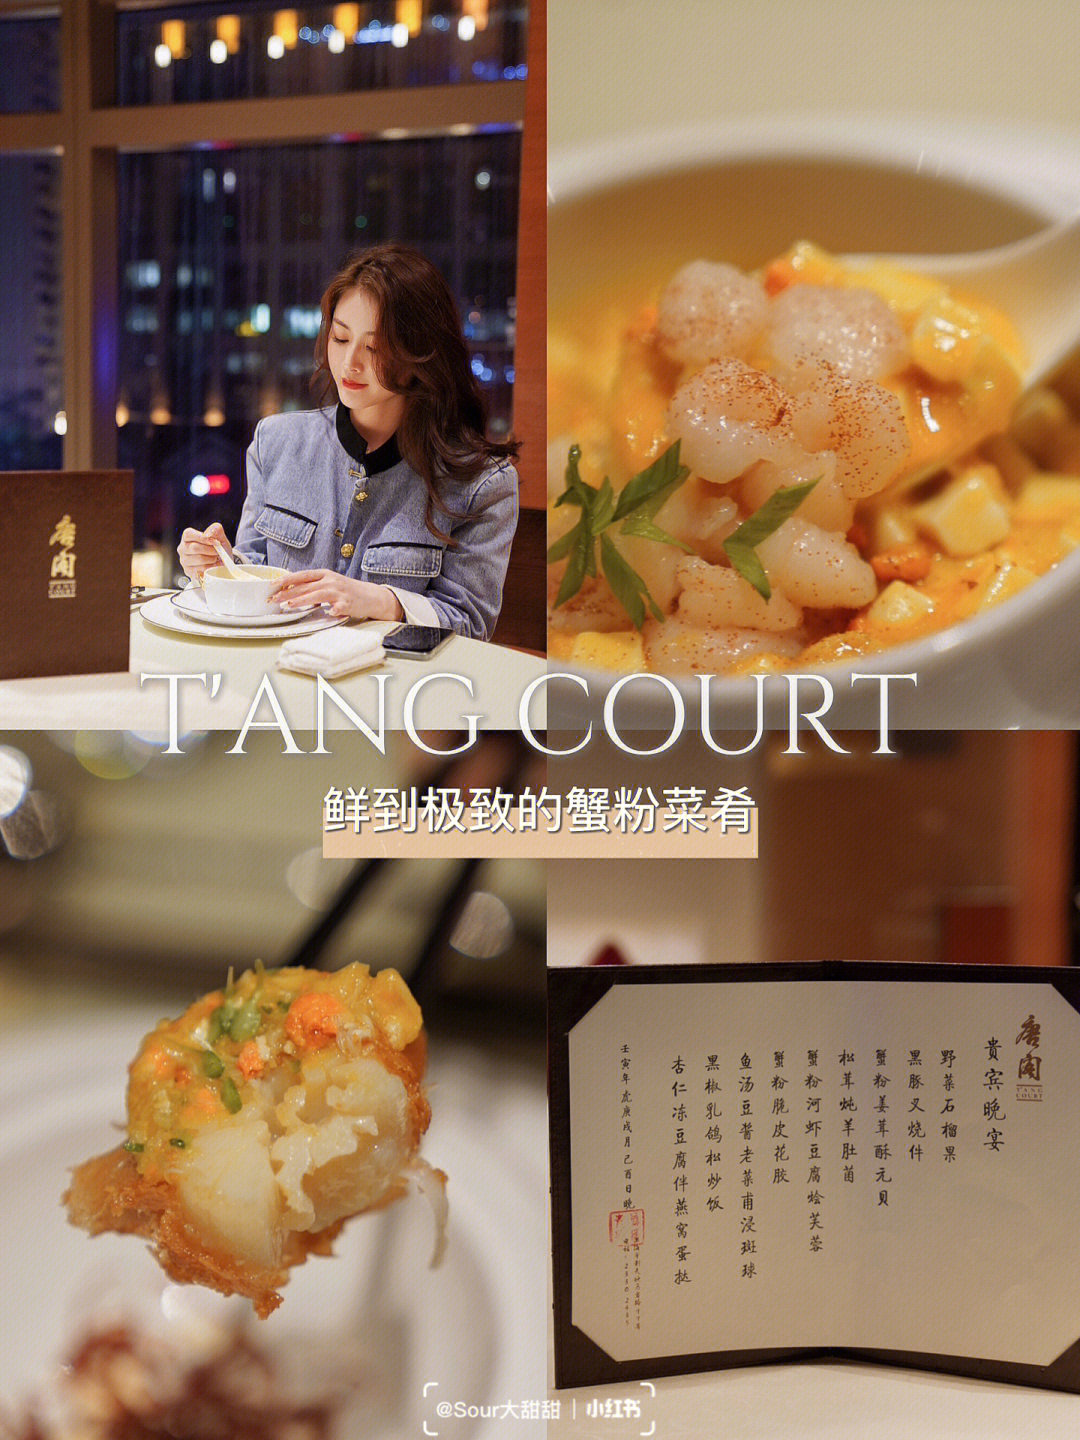 正是吃蟹的好时节,蝉联多年的米其林粤菜餐厅【唐阁】推出新菜单啦!